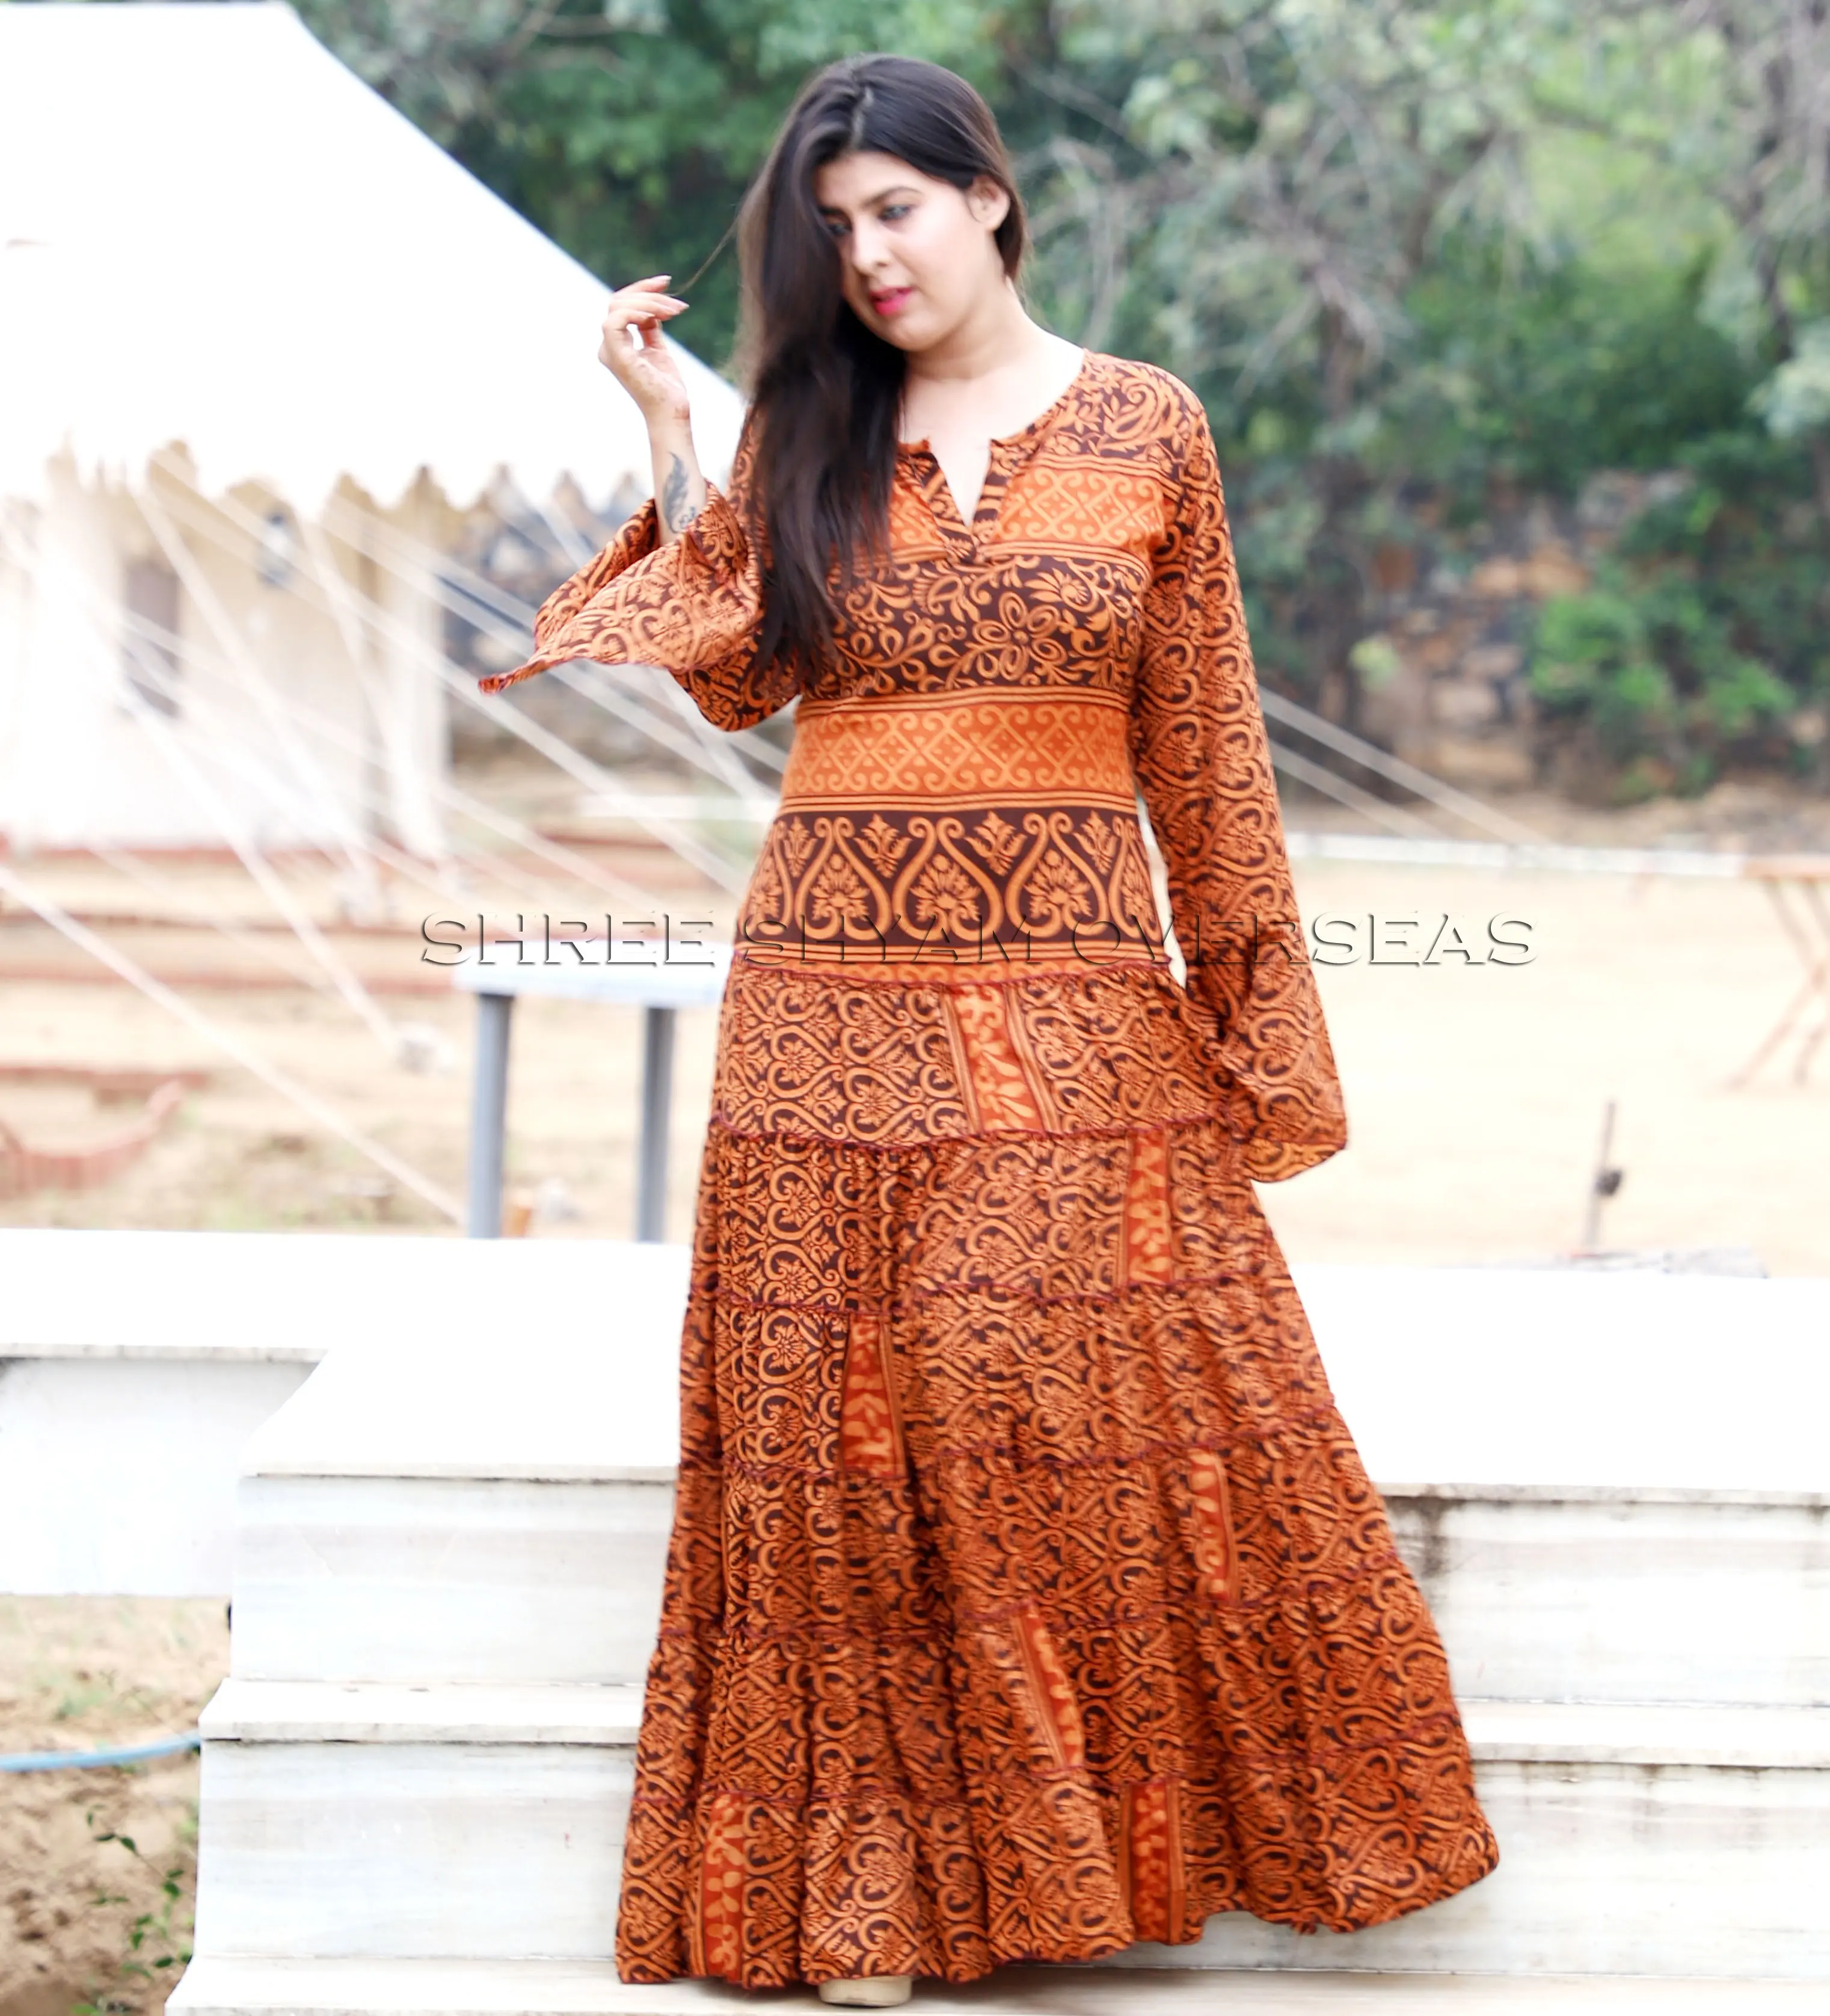 Misturar Estampas Sortidas Disponível Em 2020 Desgaste Indian Sari De Seda Do Vestido Do Vintage das Mulheres